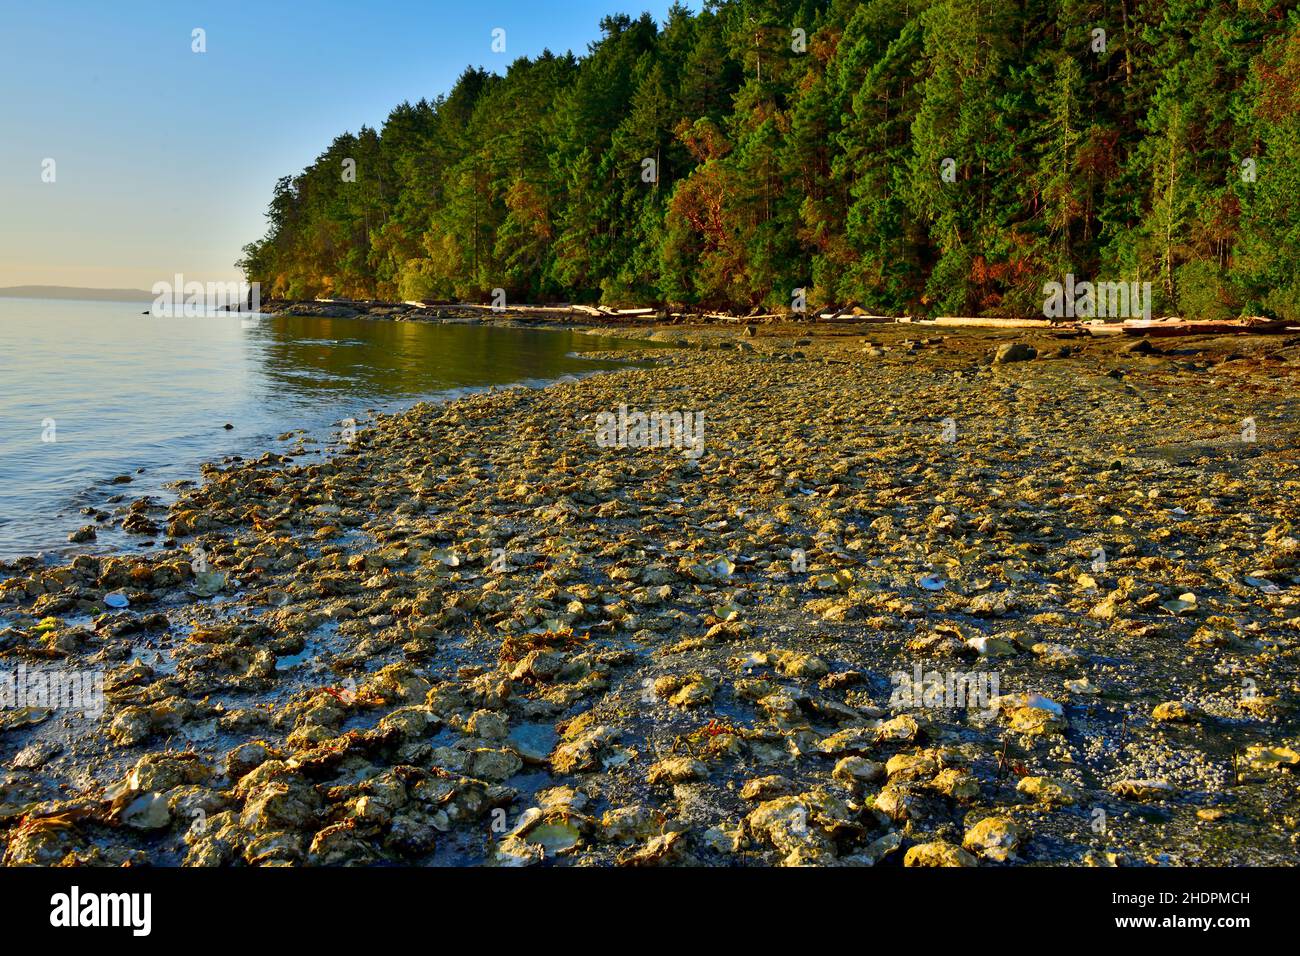 Ein Strand am Ostufer von Vancouver Island, der mit wilden Austern bedeckt ist, die sich an der felsigen Küste Klammern. Stockfoto